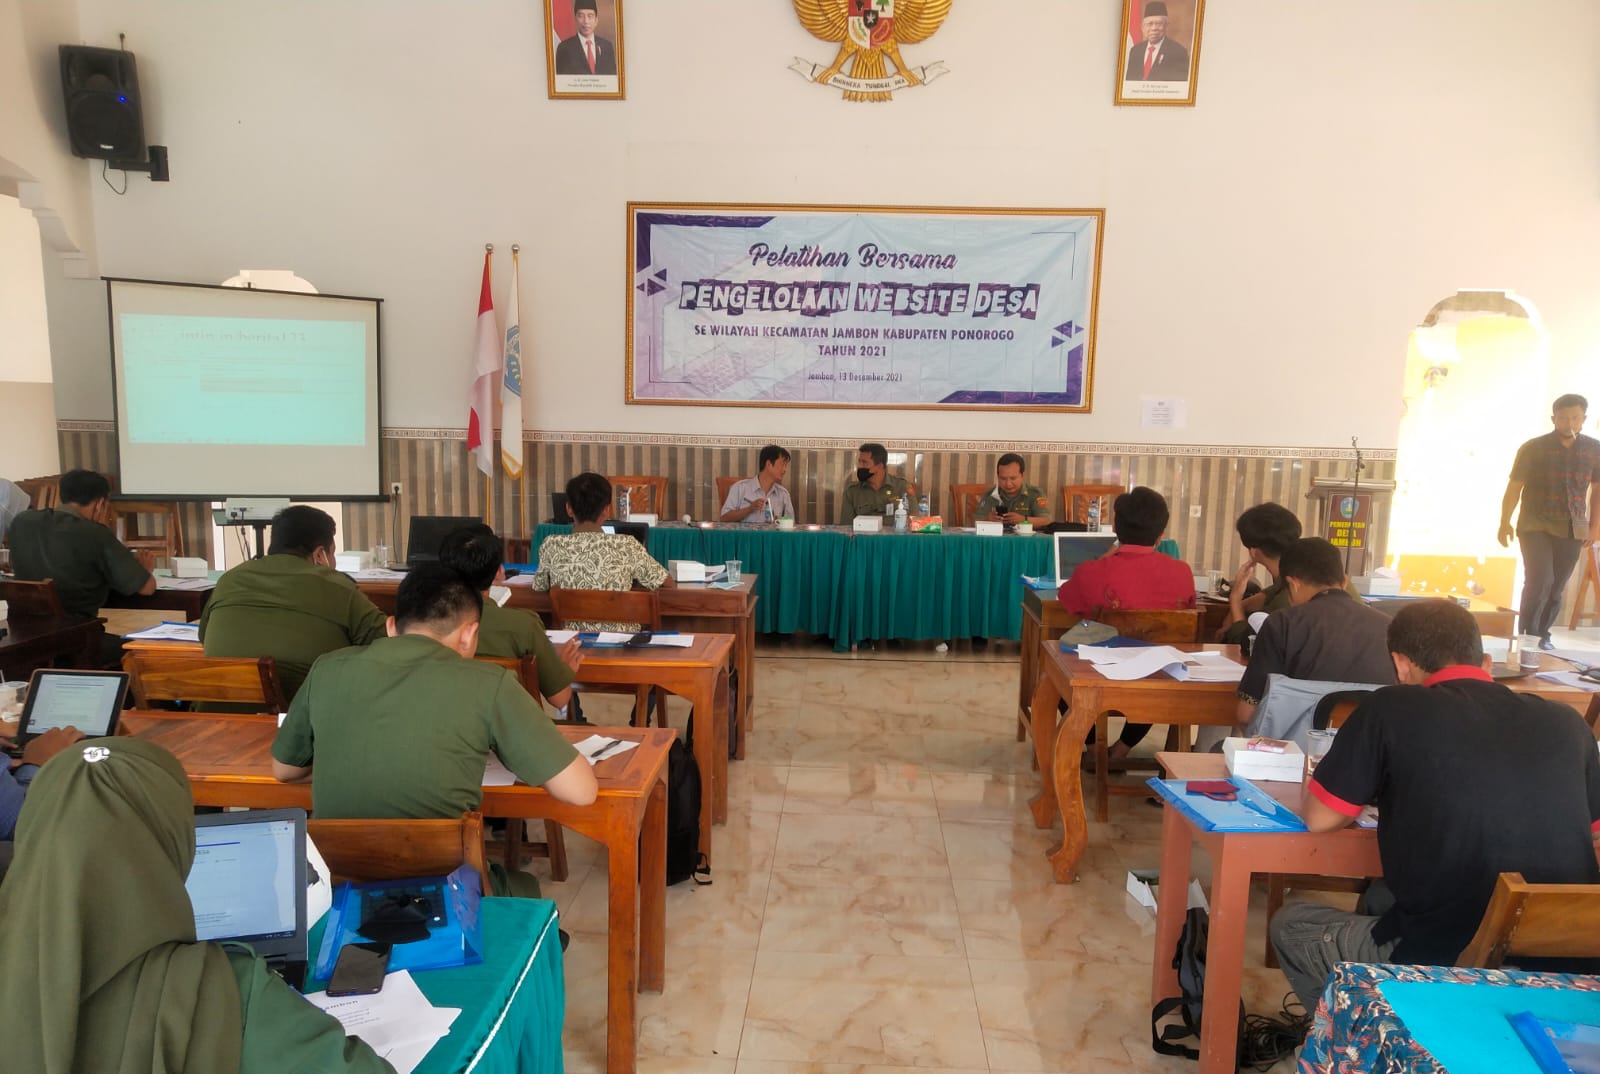 Pelatihan Bersama Pengelolaan Website Desa Se Wilayah Kecamatan Jambon Tahun 2021